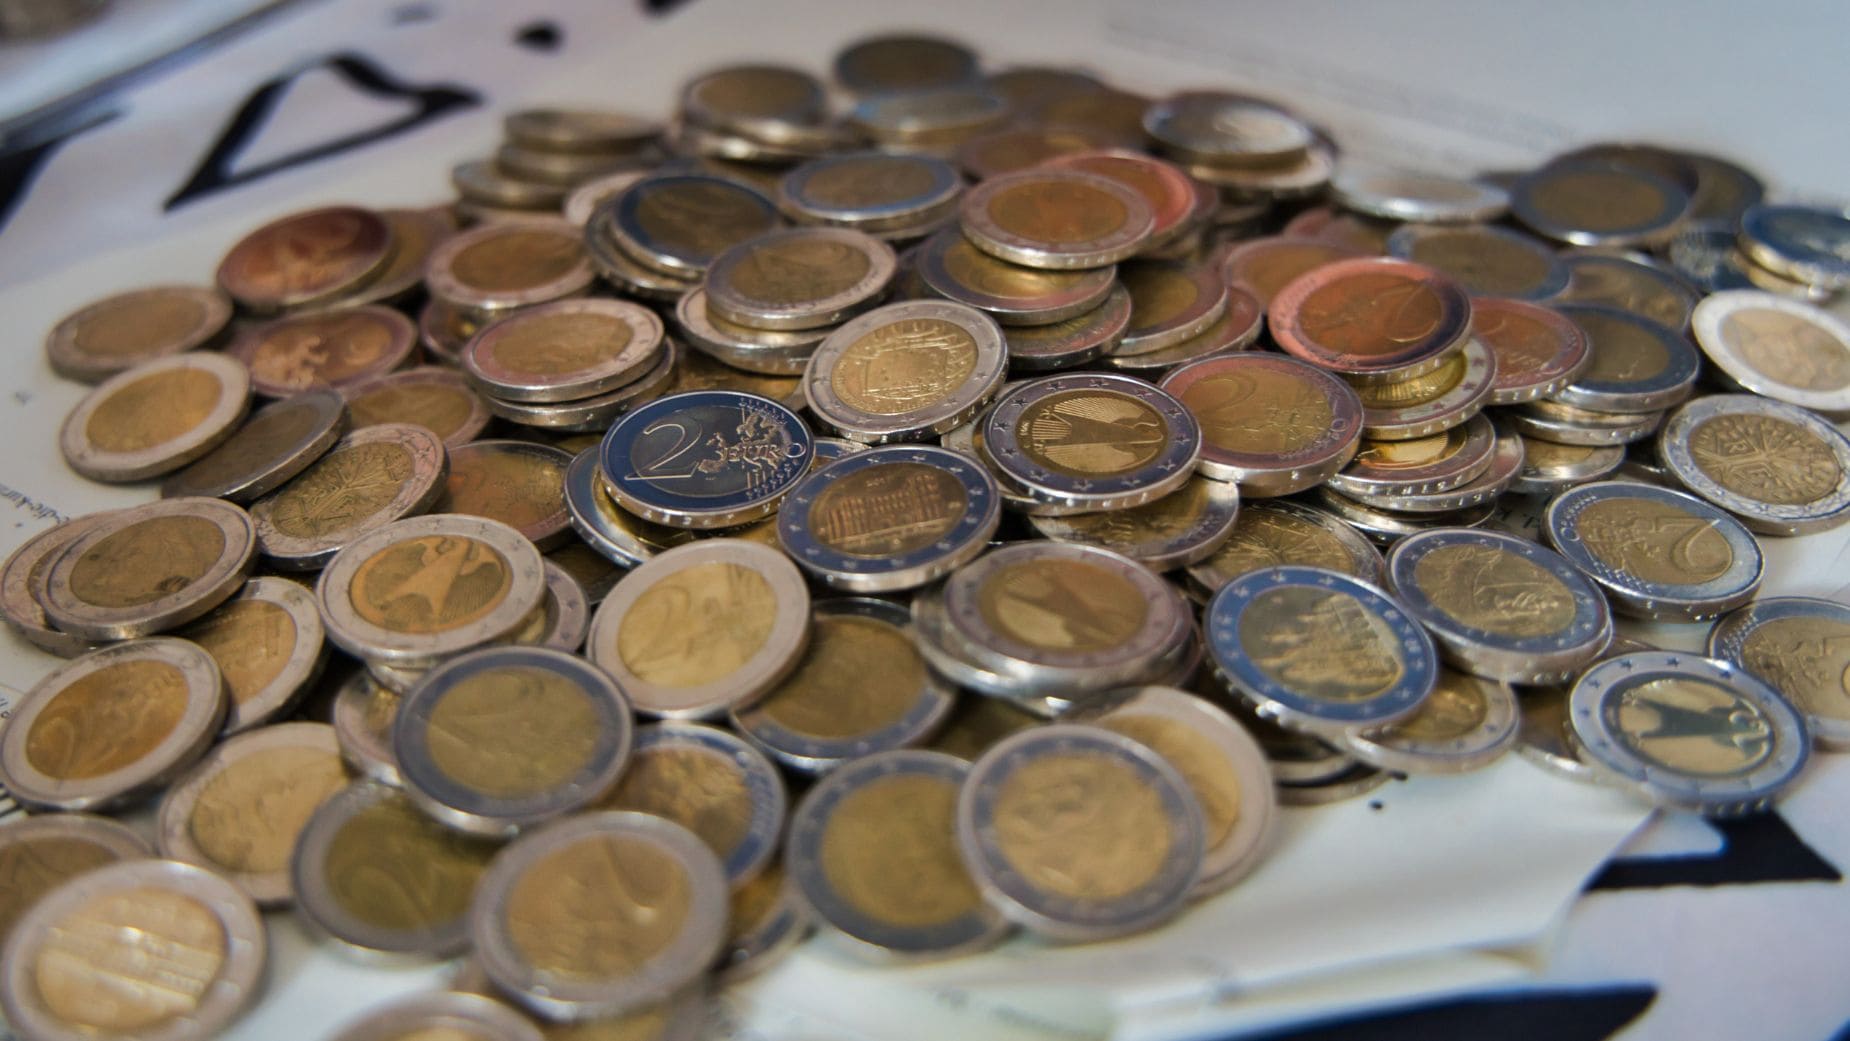 Cuidado con las monedas de 2 euros que puedan ser falsas